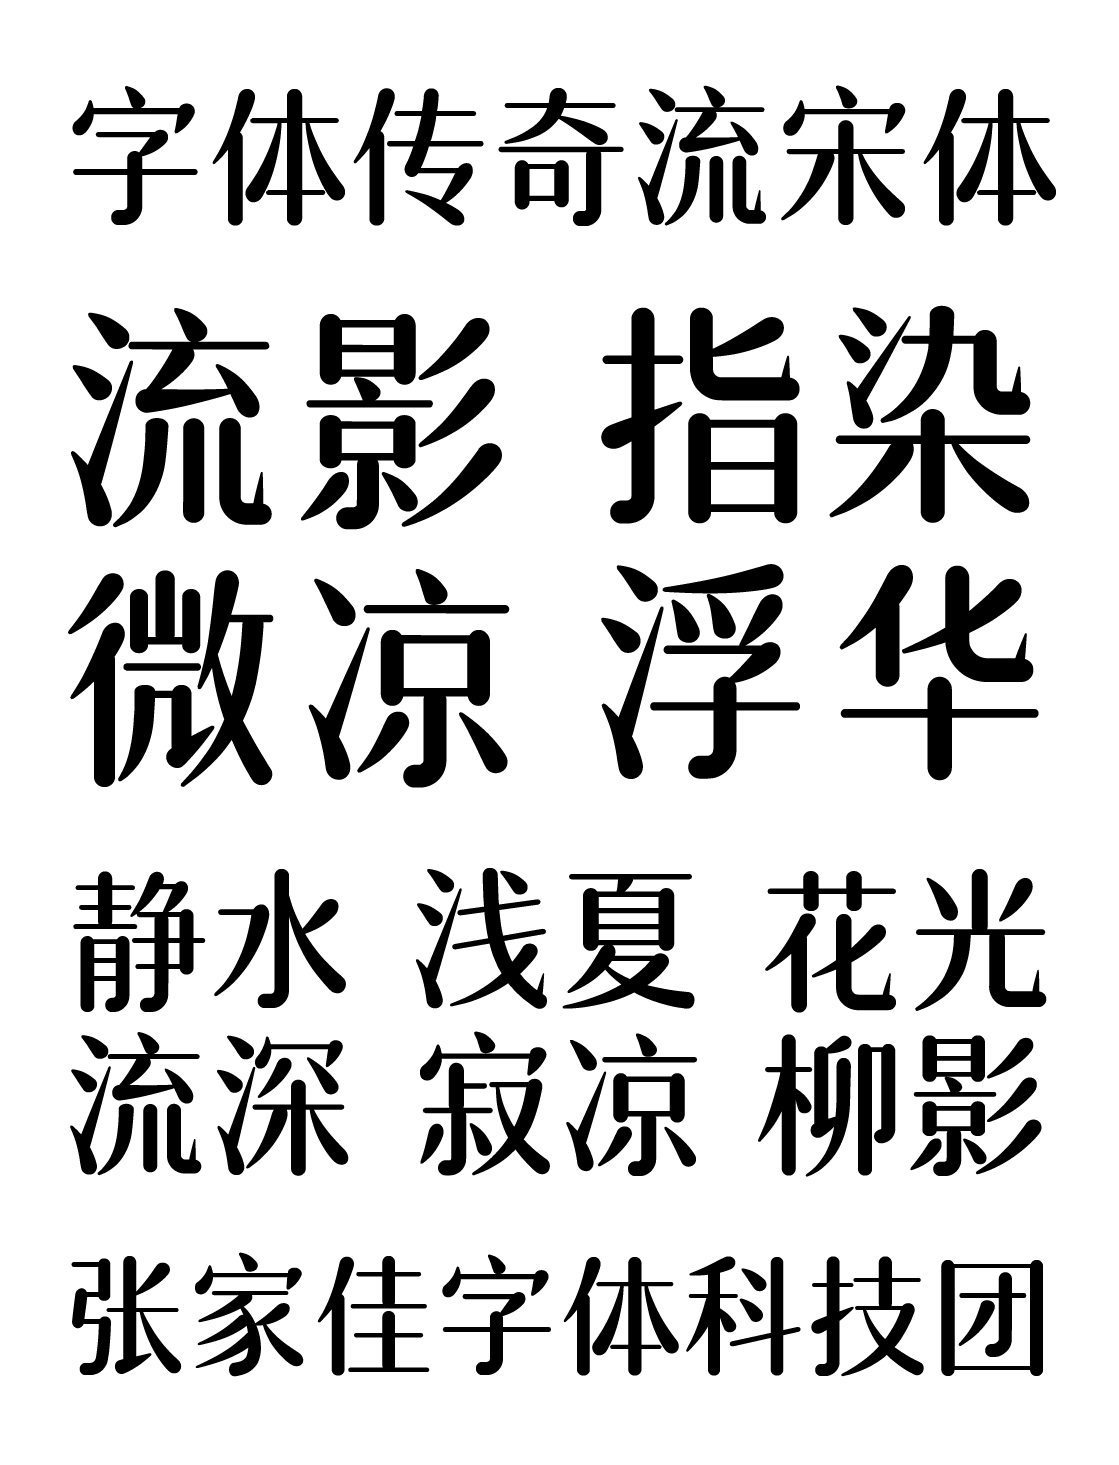 字體傳奇流宋體 簡體6763個漢字